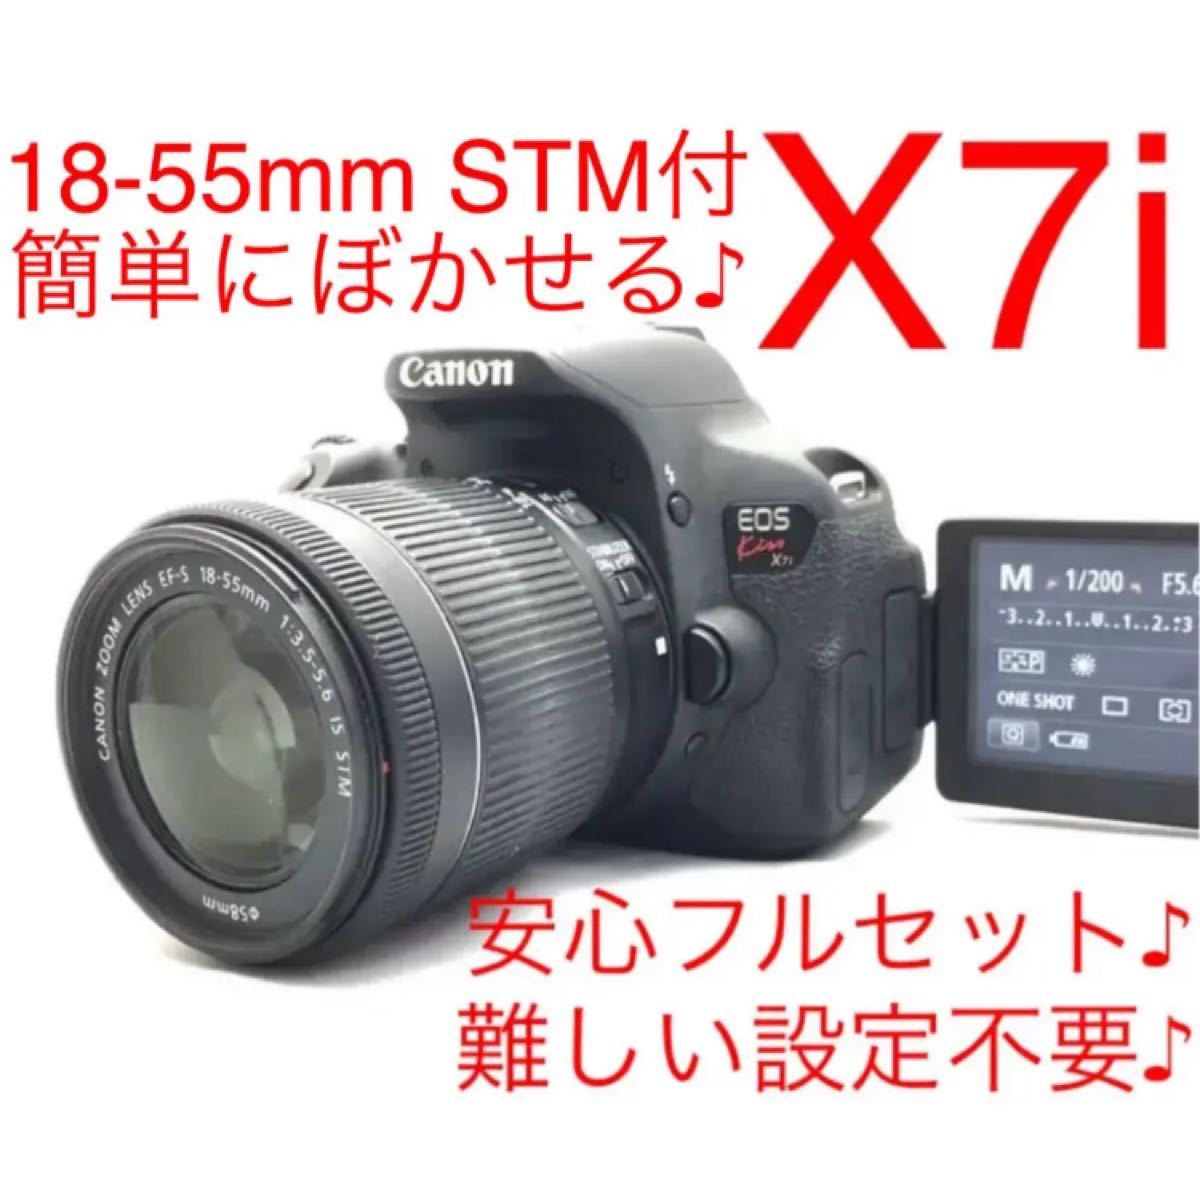 Canon EOS kiss x7i レンズキット♪難しい設定不要♪簡単にボかせる 